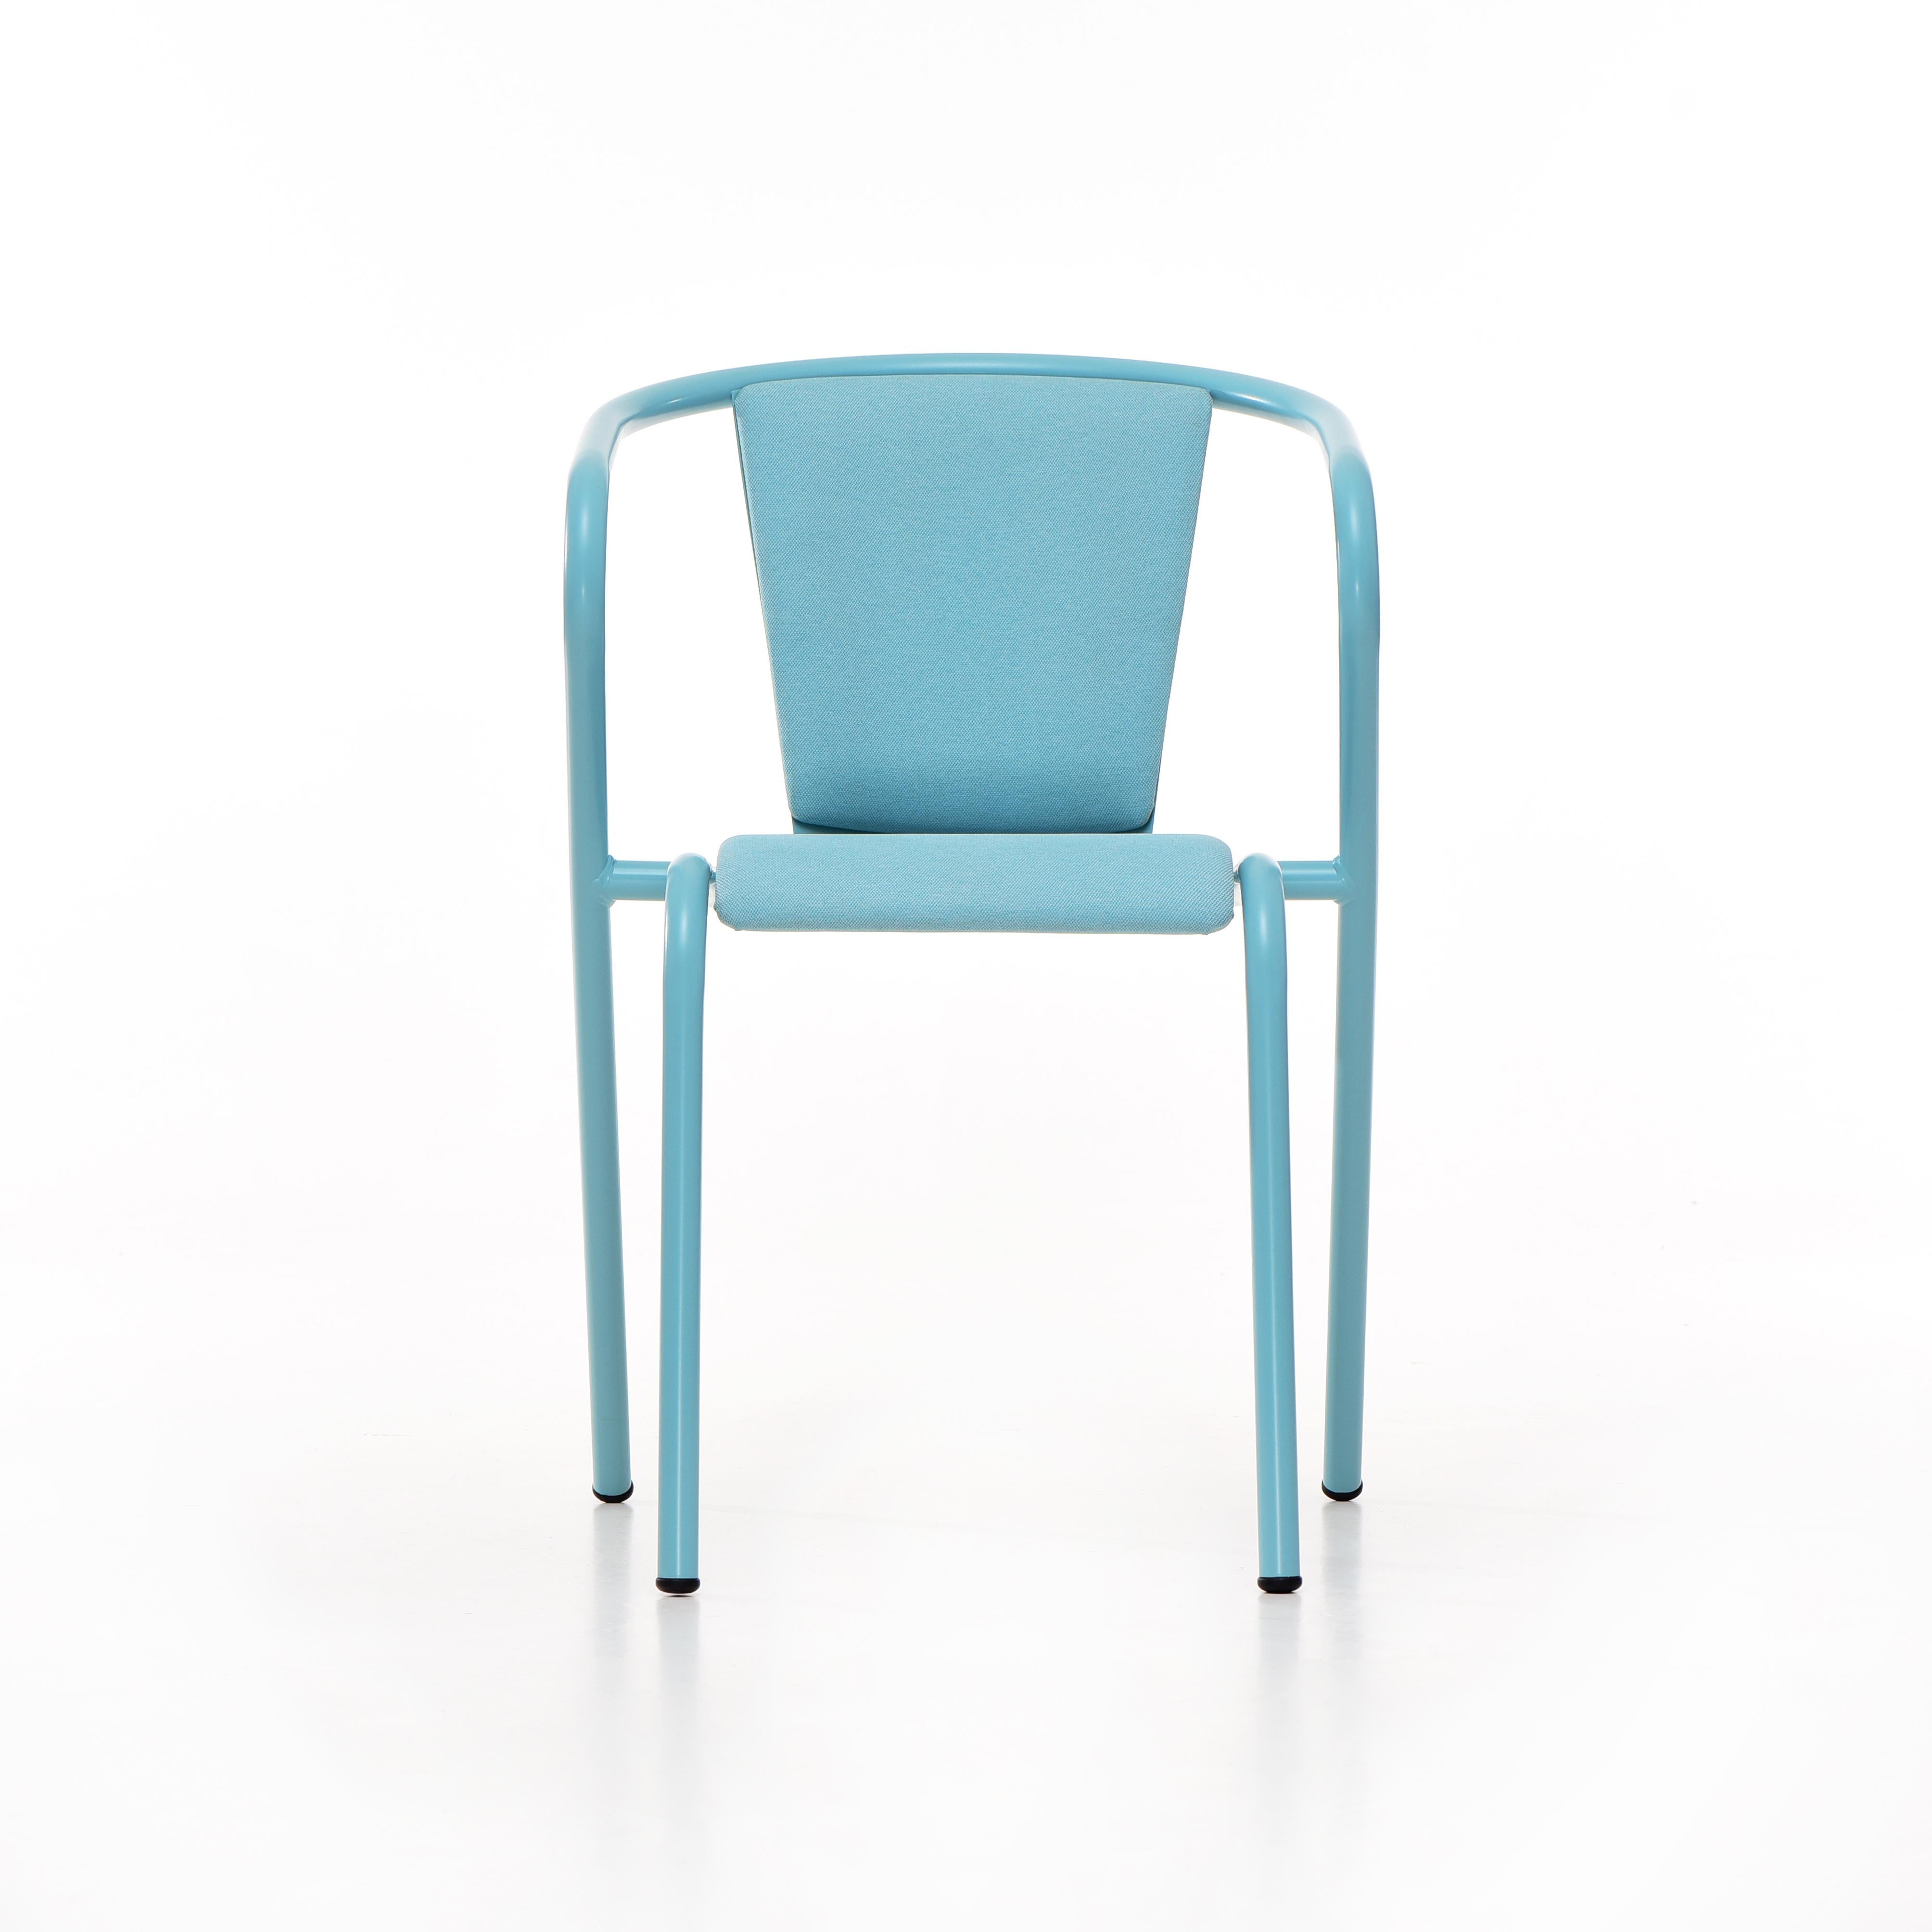 BICAchair est un fauteuil de salle à manger empilable en acier recyclé et recyclable, fini avec notre sélection de couleurs de revêtement en poudre, dans ce cas dans une couleur bleu pastel, qui transforme un classique en quelque chose de nouveau et